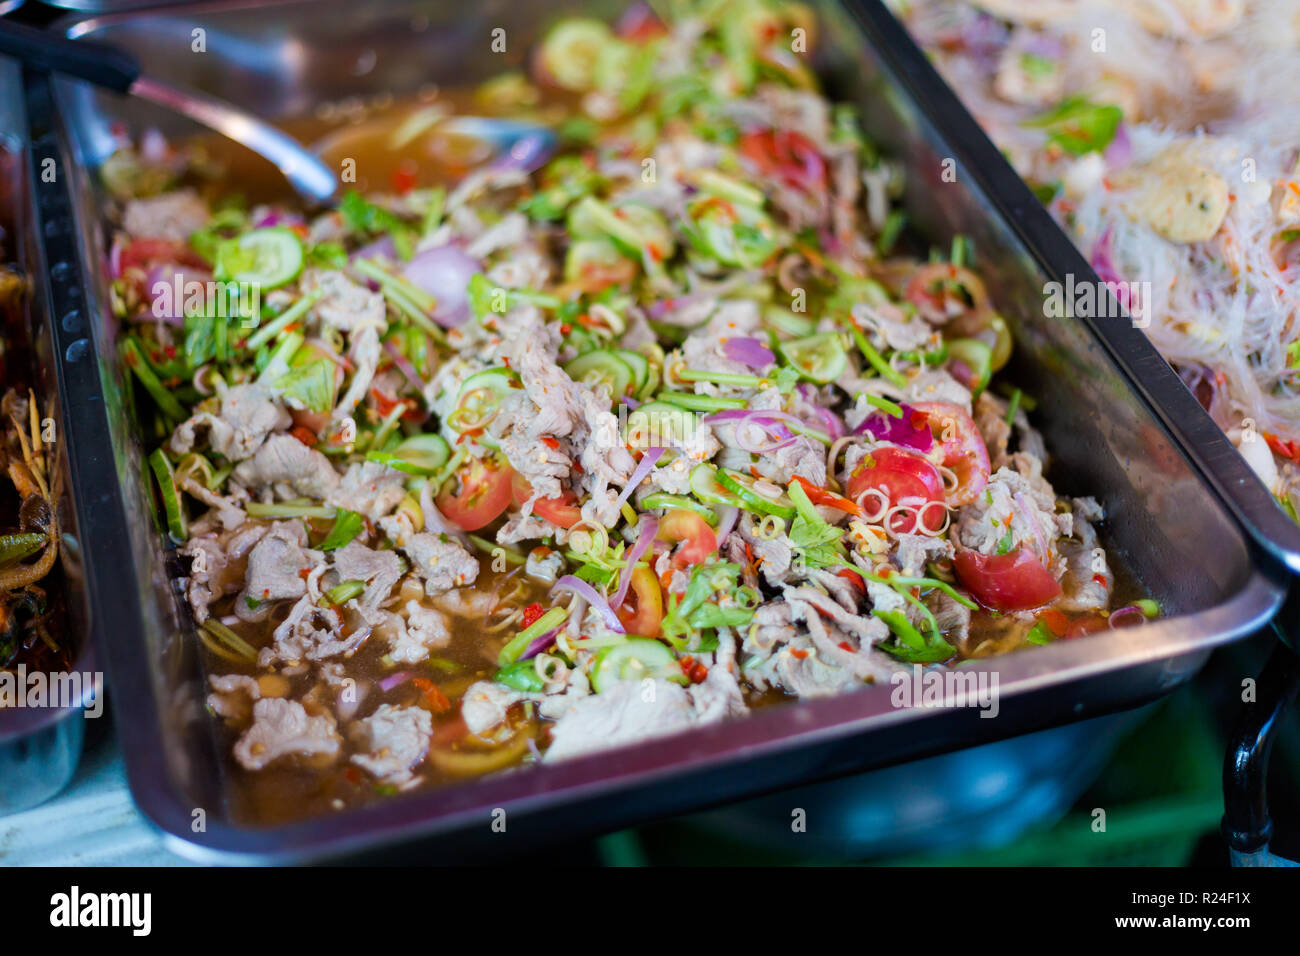 Porc épicé frais préparé salade asiatique avec légumes croquants sur le marché local à Bangkok. La cuisine thaïlandaise traditionnelle faite d'ingrédients frais. Banque D'Images